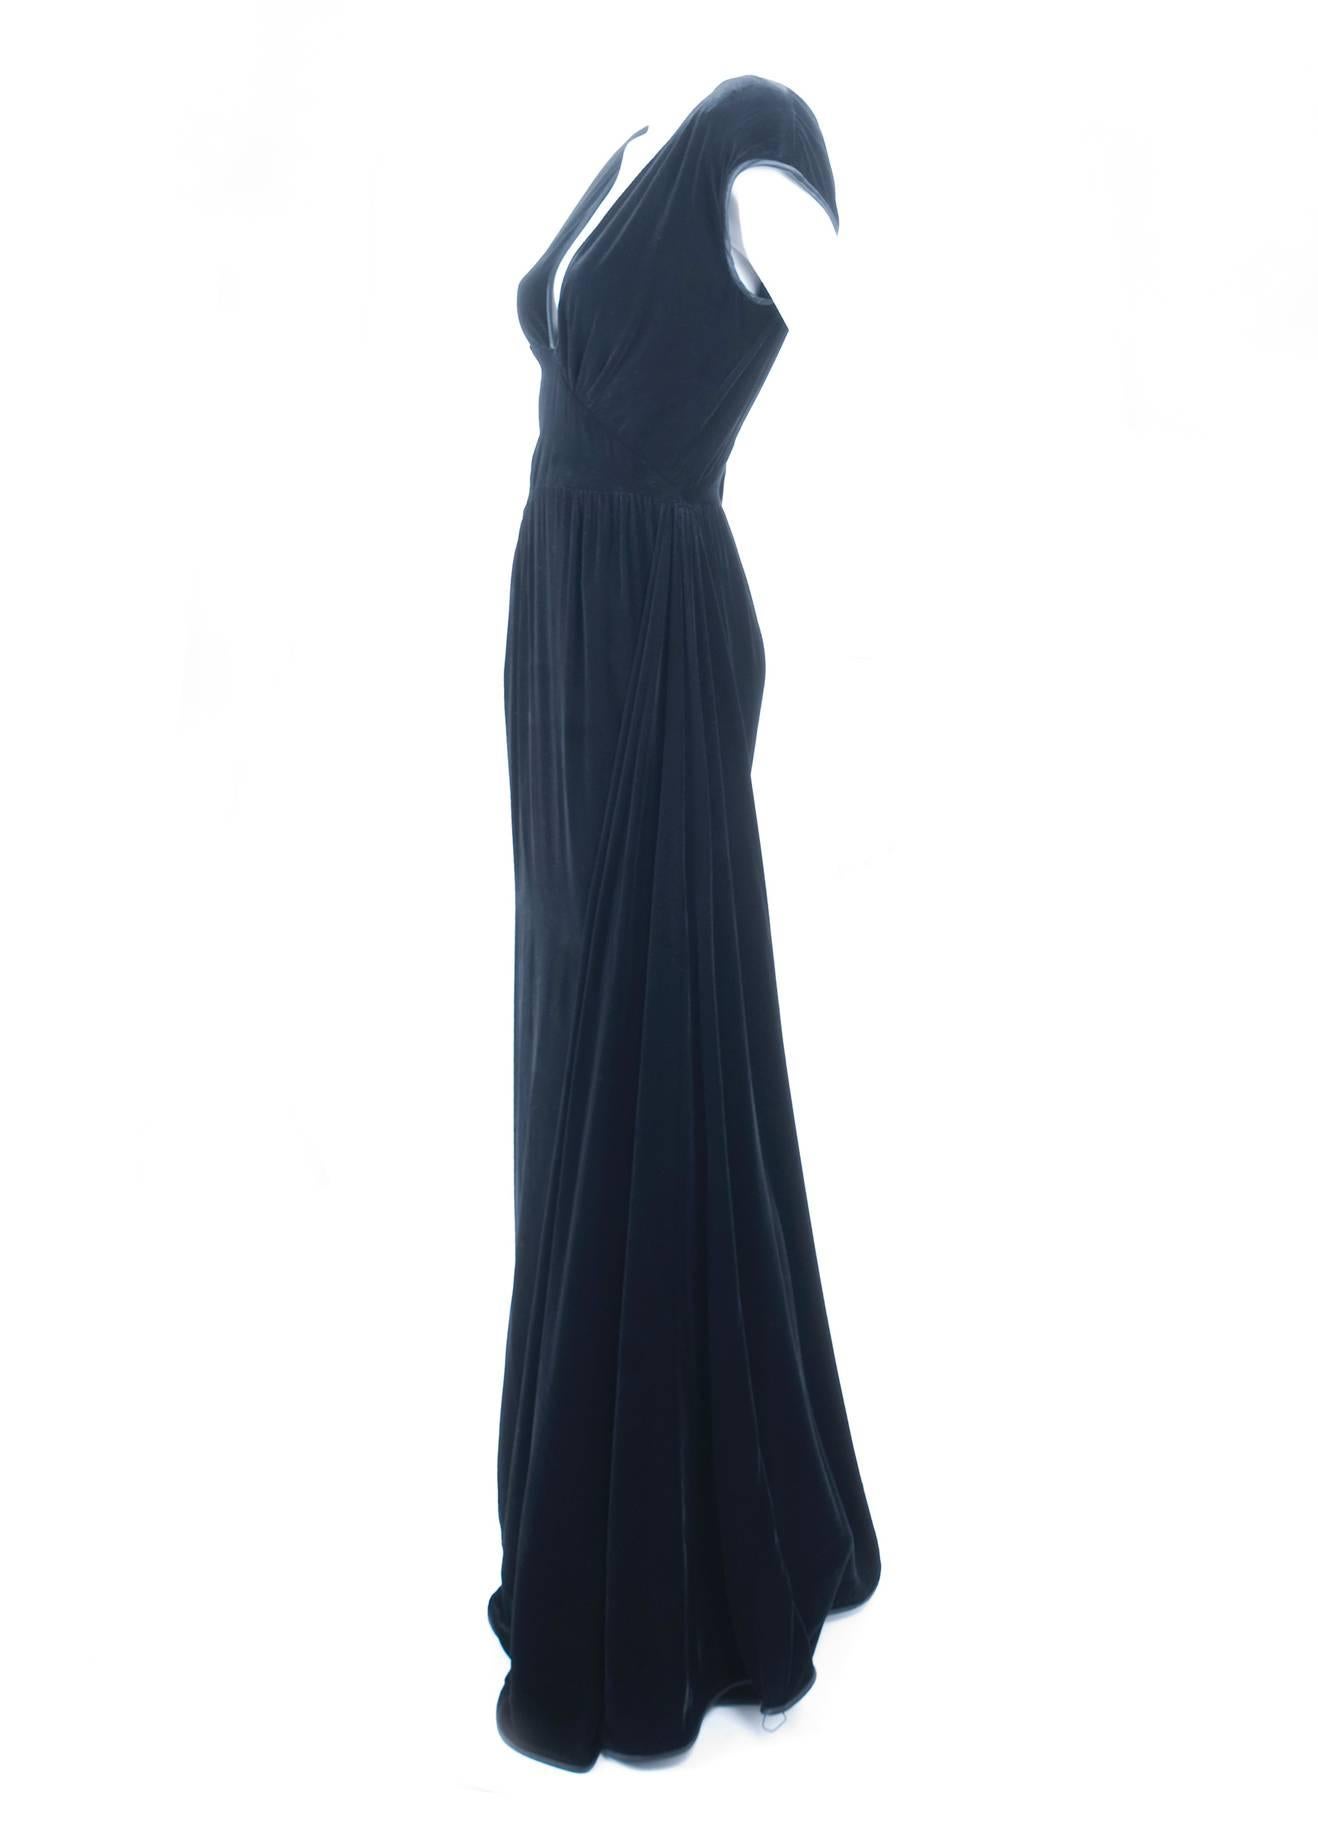 Women's 1980 Valentino Black Velvet Evening Gown For Sale